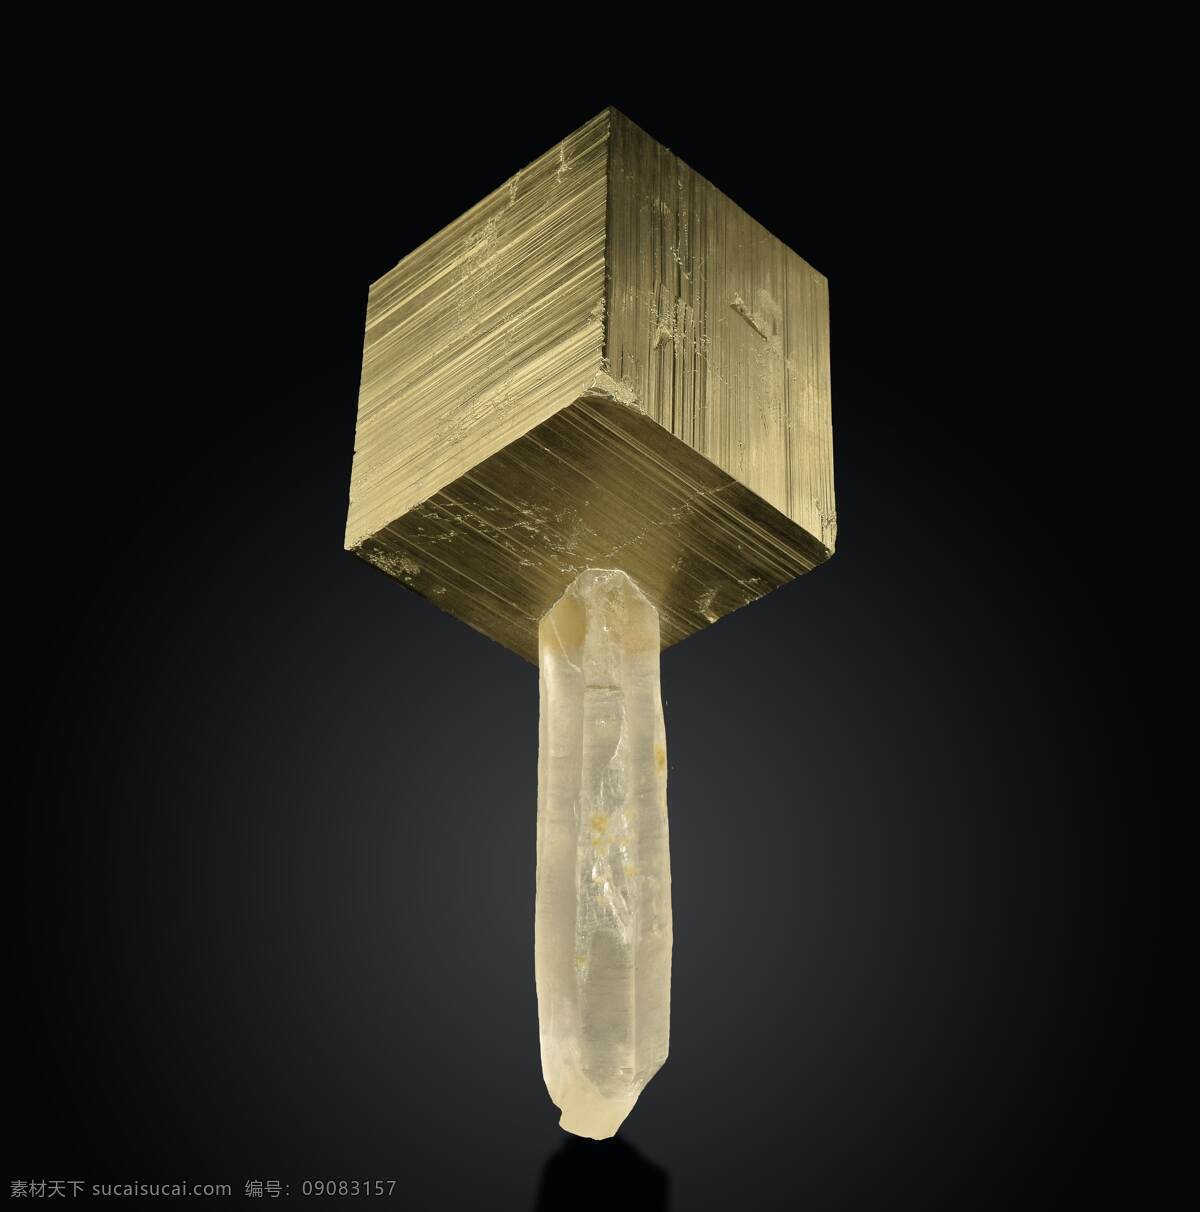 方块与冰块 锤子 雷神之锤 方块 金色方块 冰块 冰 生活百科 生活素材